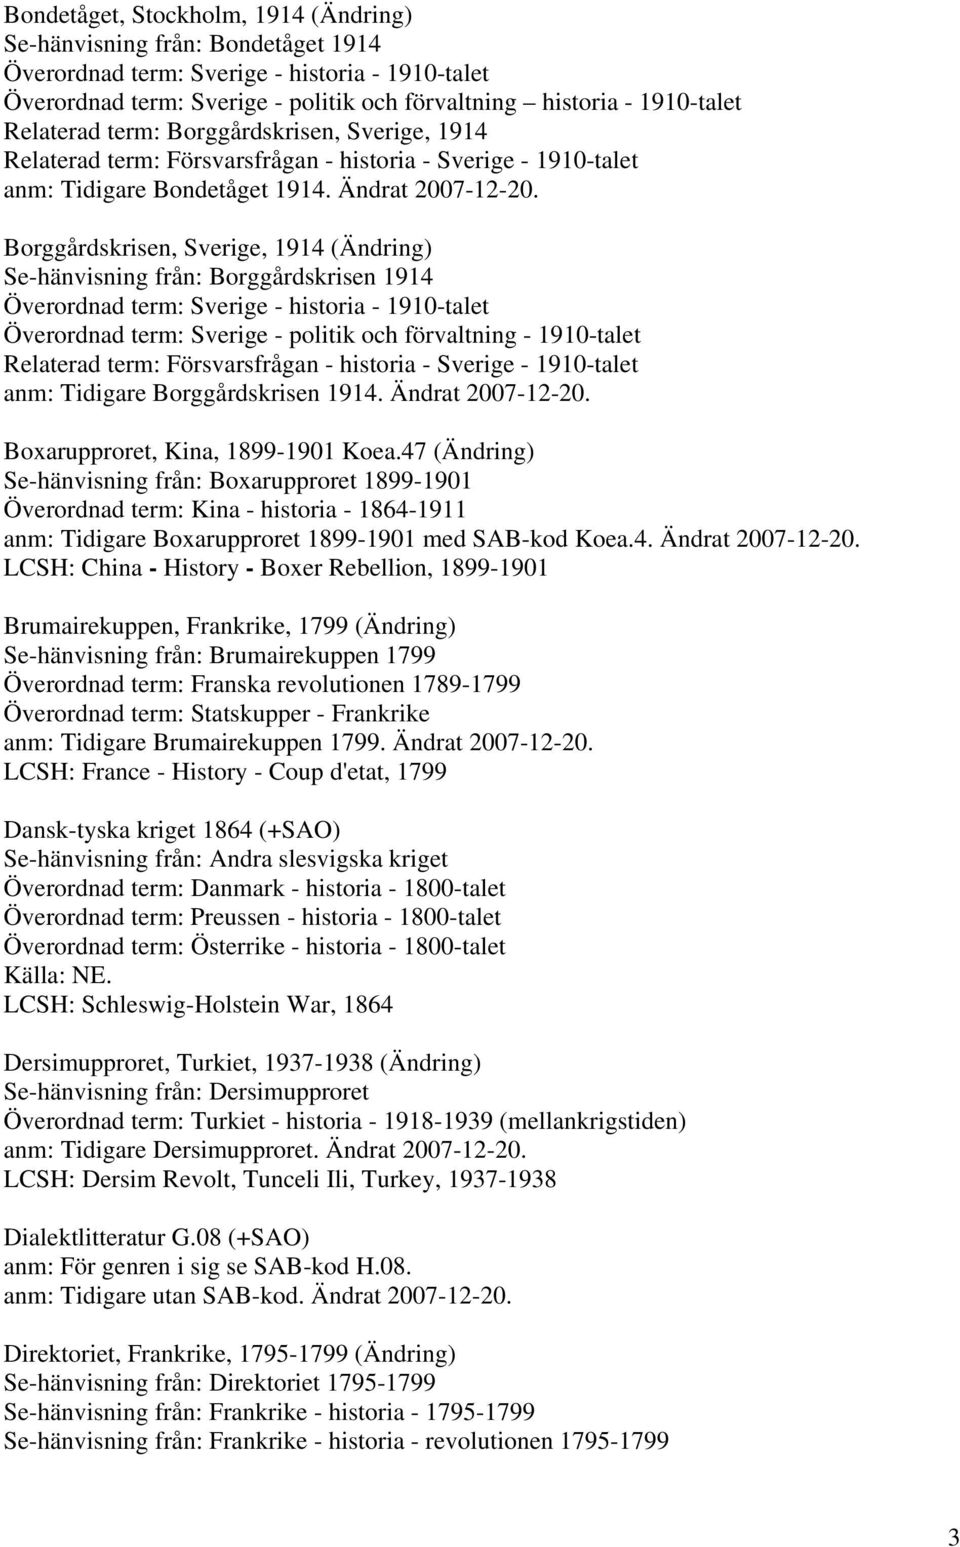 Borggårdskrisen, Sverige, 1914 (Ändring) Se-hänvisning från: Borggårdskrisen 1914 Överordnad term: Sverige - historia - 1910-talet Överordnad term: Sverige - politik och förvaltning - 1910-talet